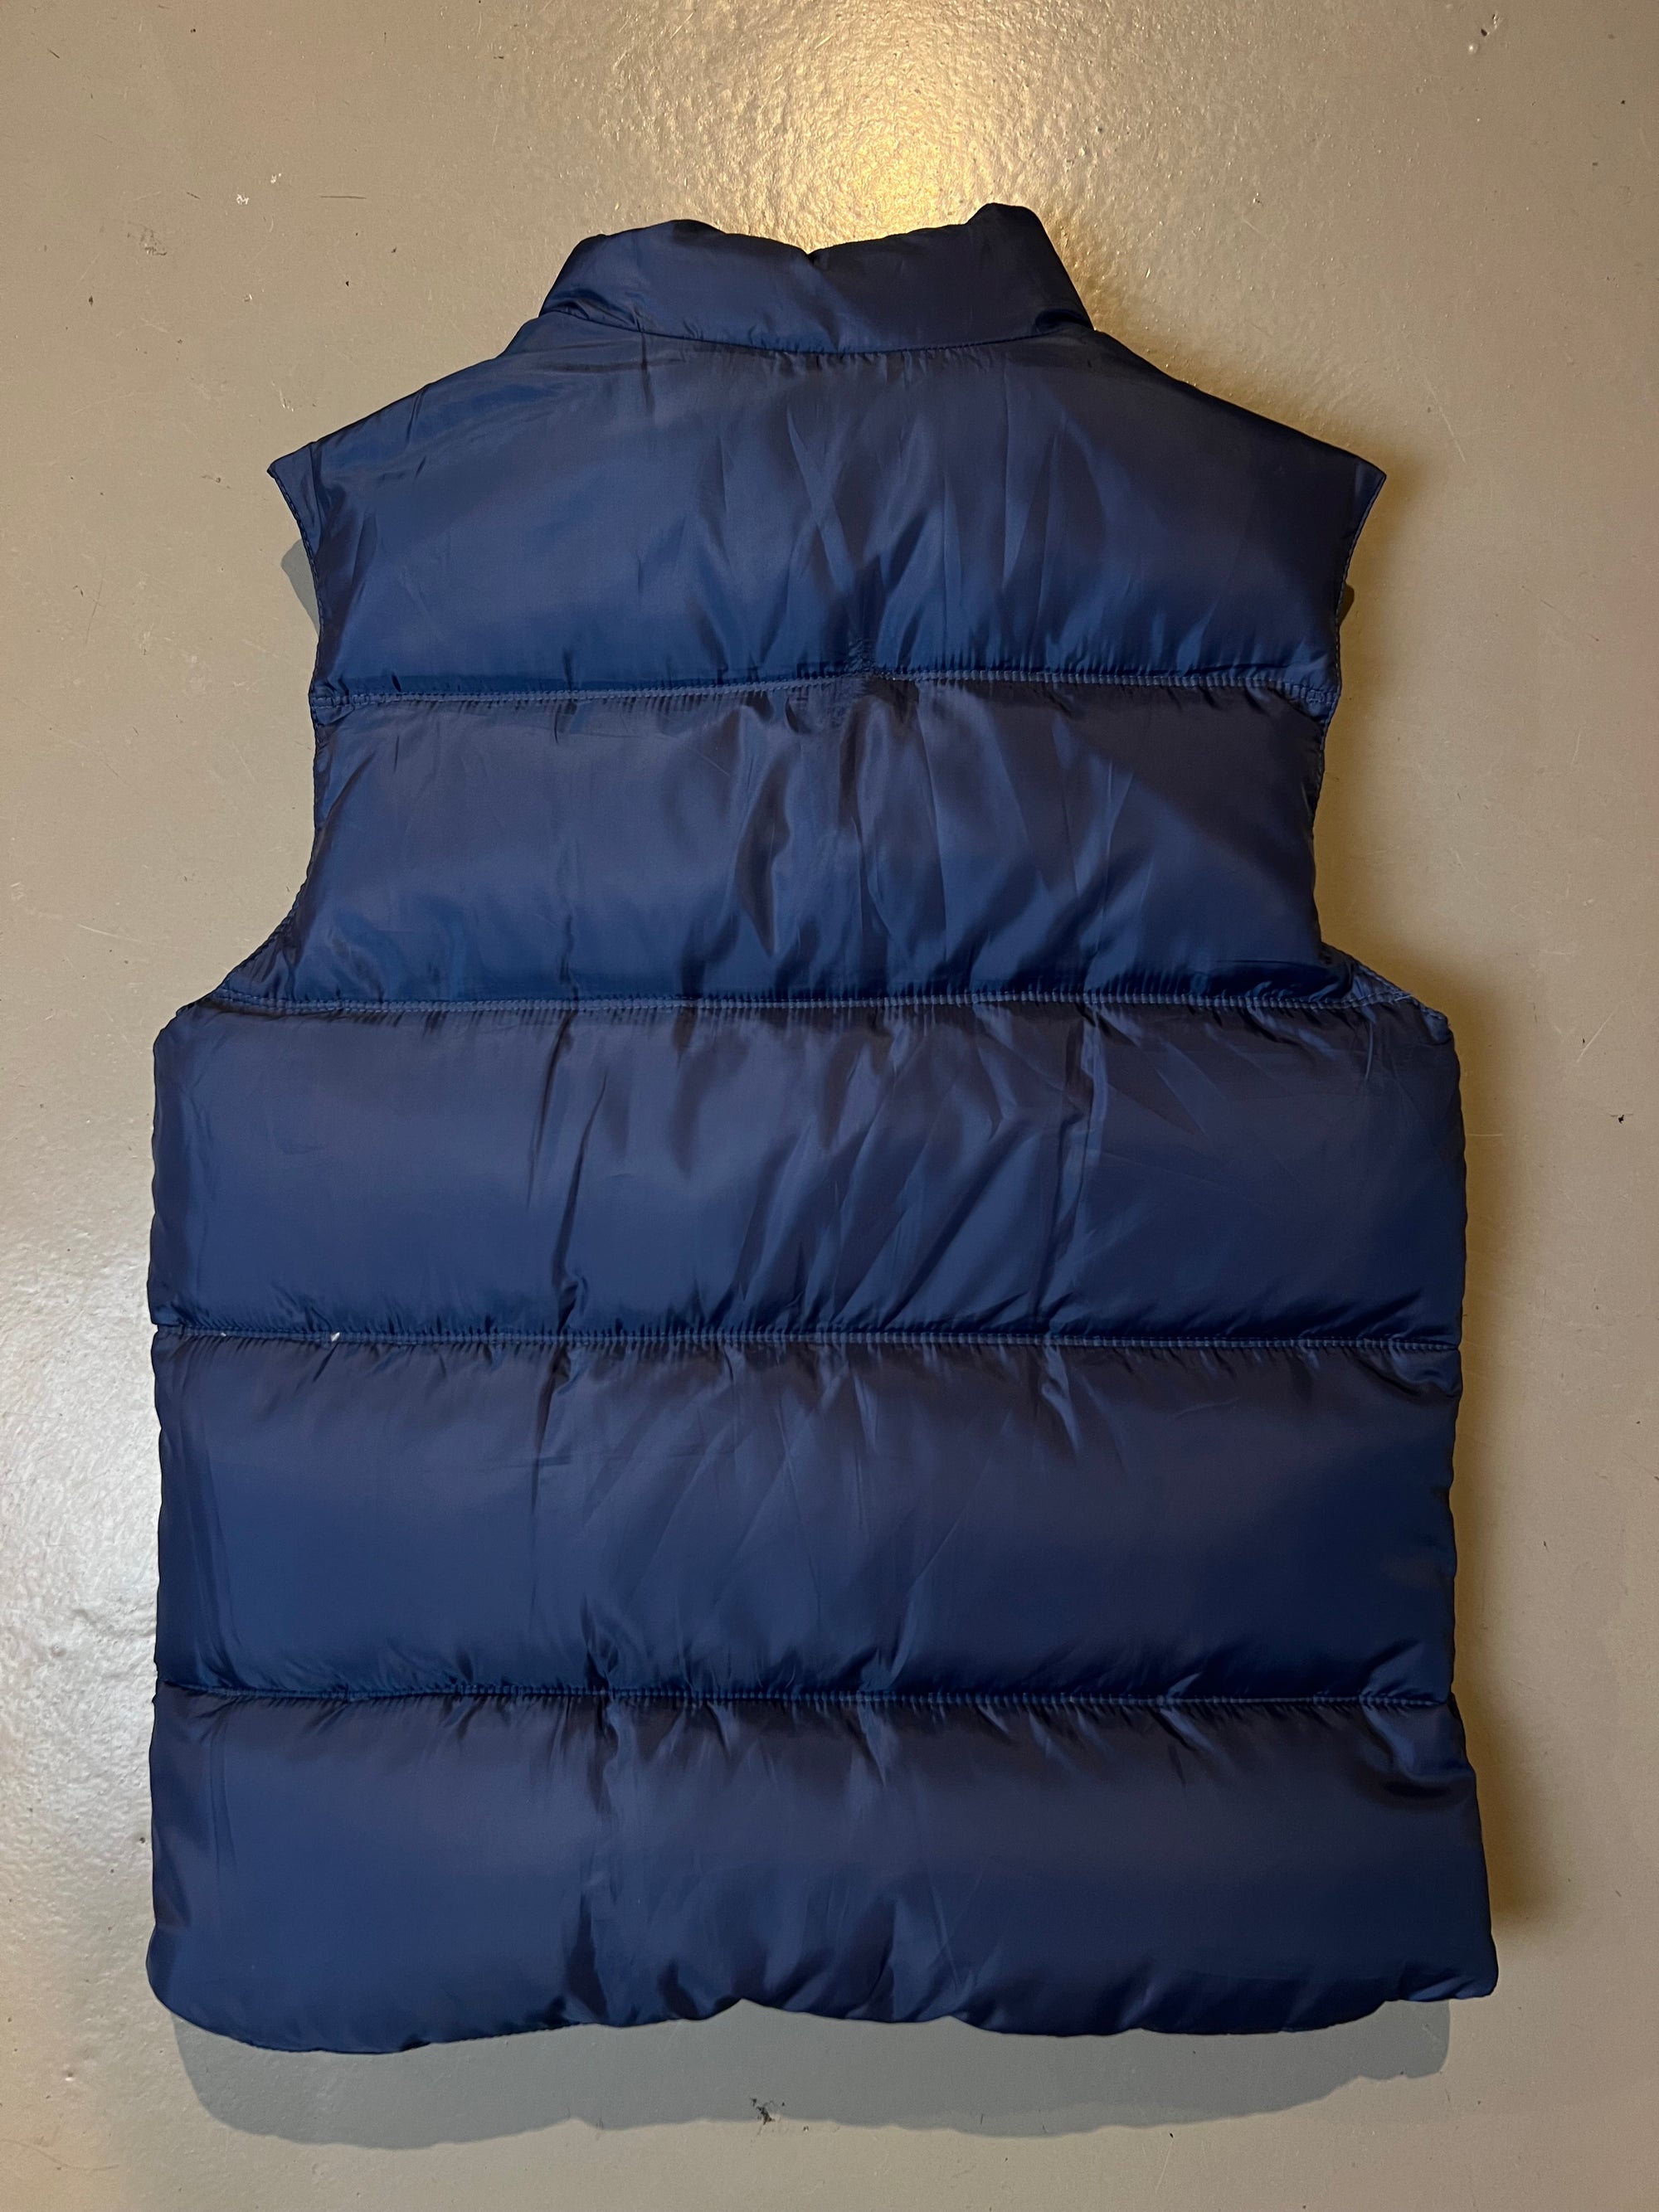 Produktbild der Vintage Napapijri Blue Vest M/L von hinten.